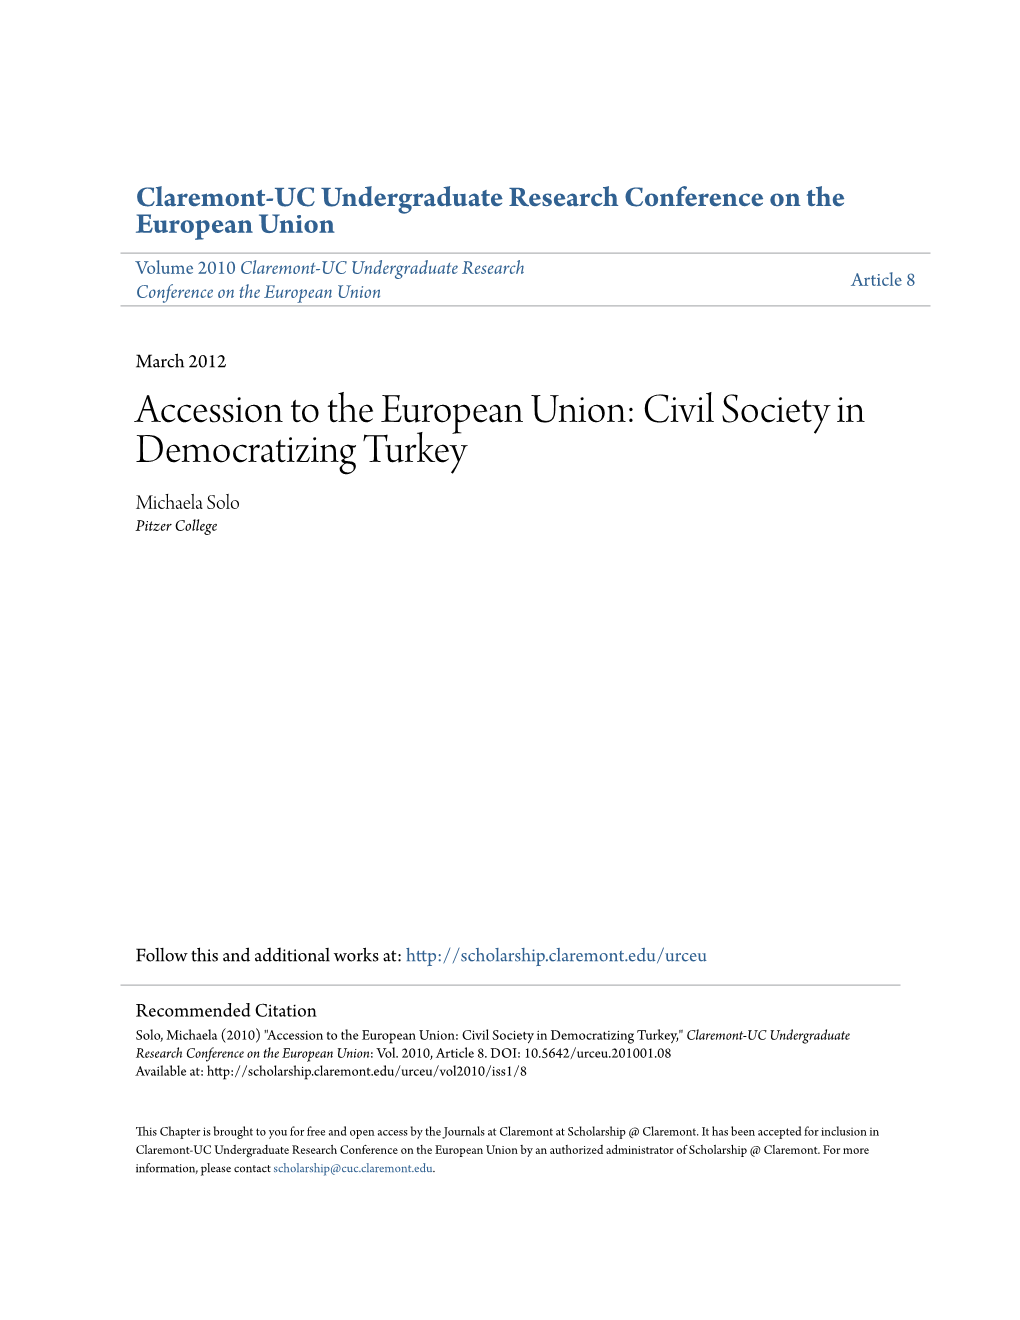 Accession to the European Union: Civil Society in Democratizing Turkey Michaela Solo Pitzer College